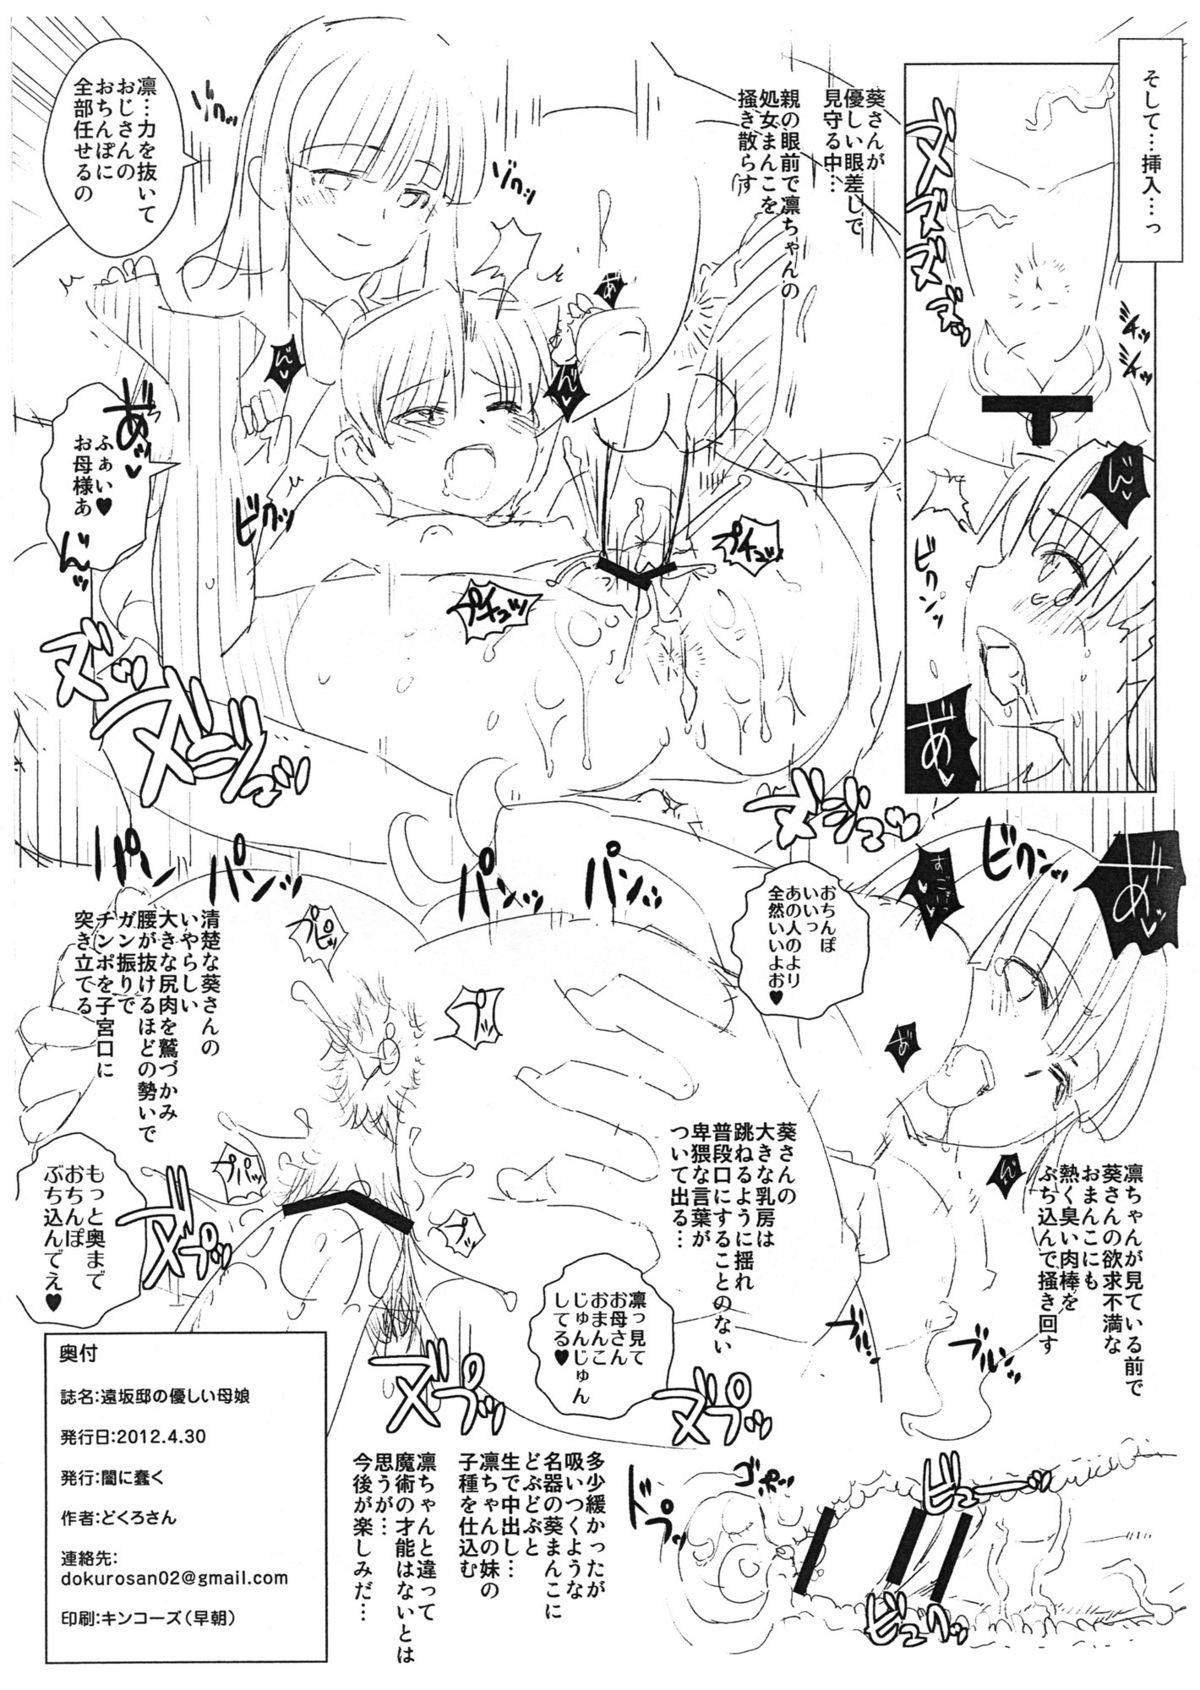 Tohsaka-tei no Hidoku Yasashii Shimai + Paper 25